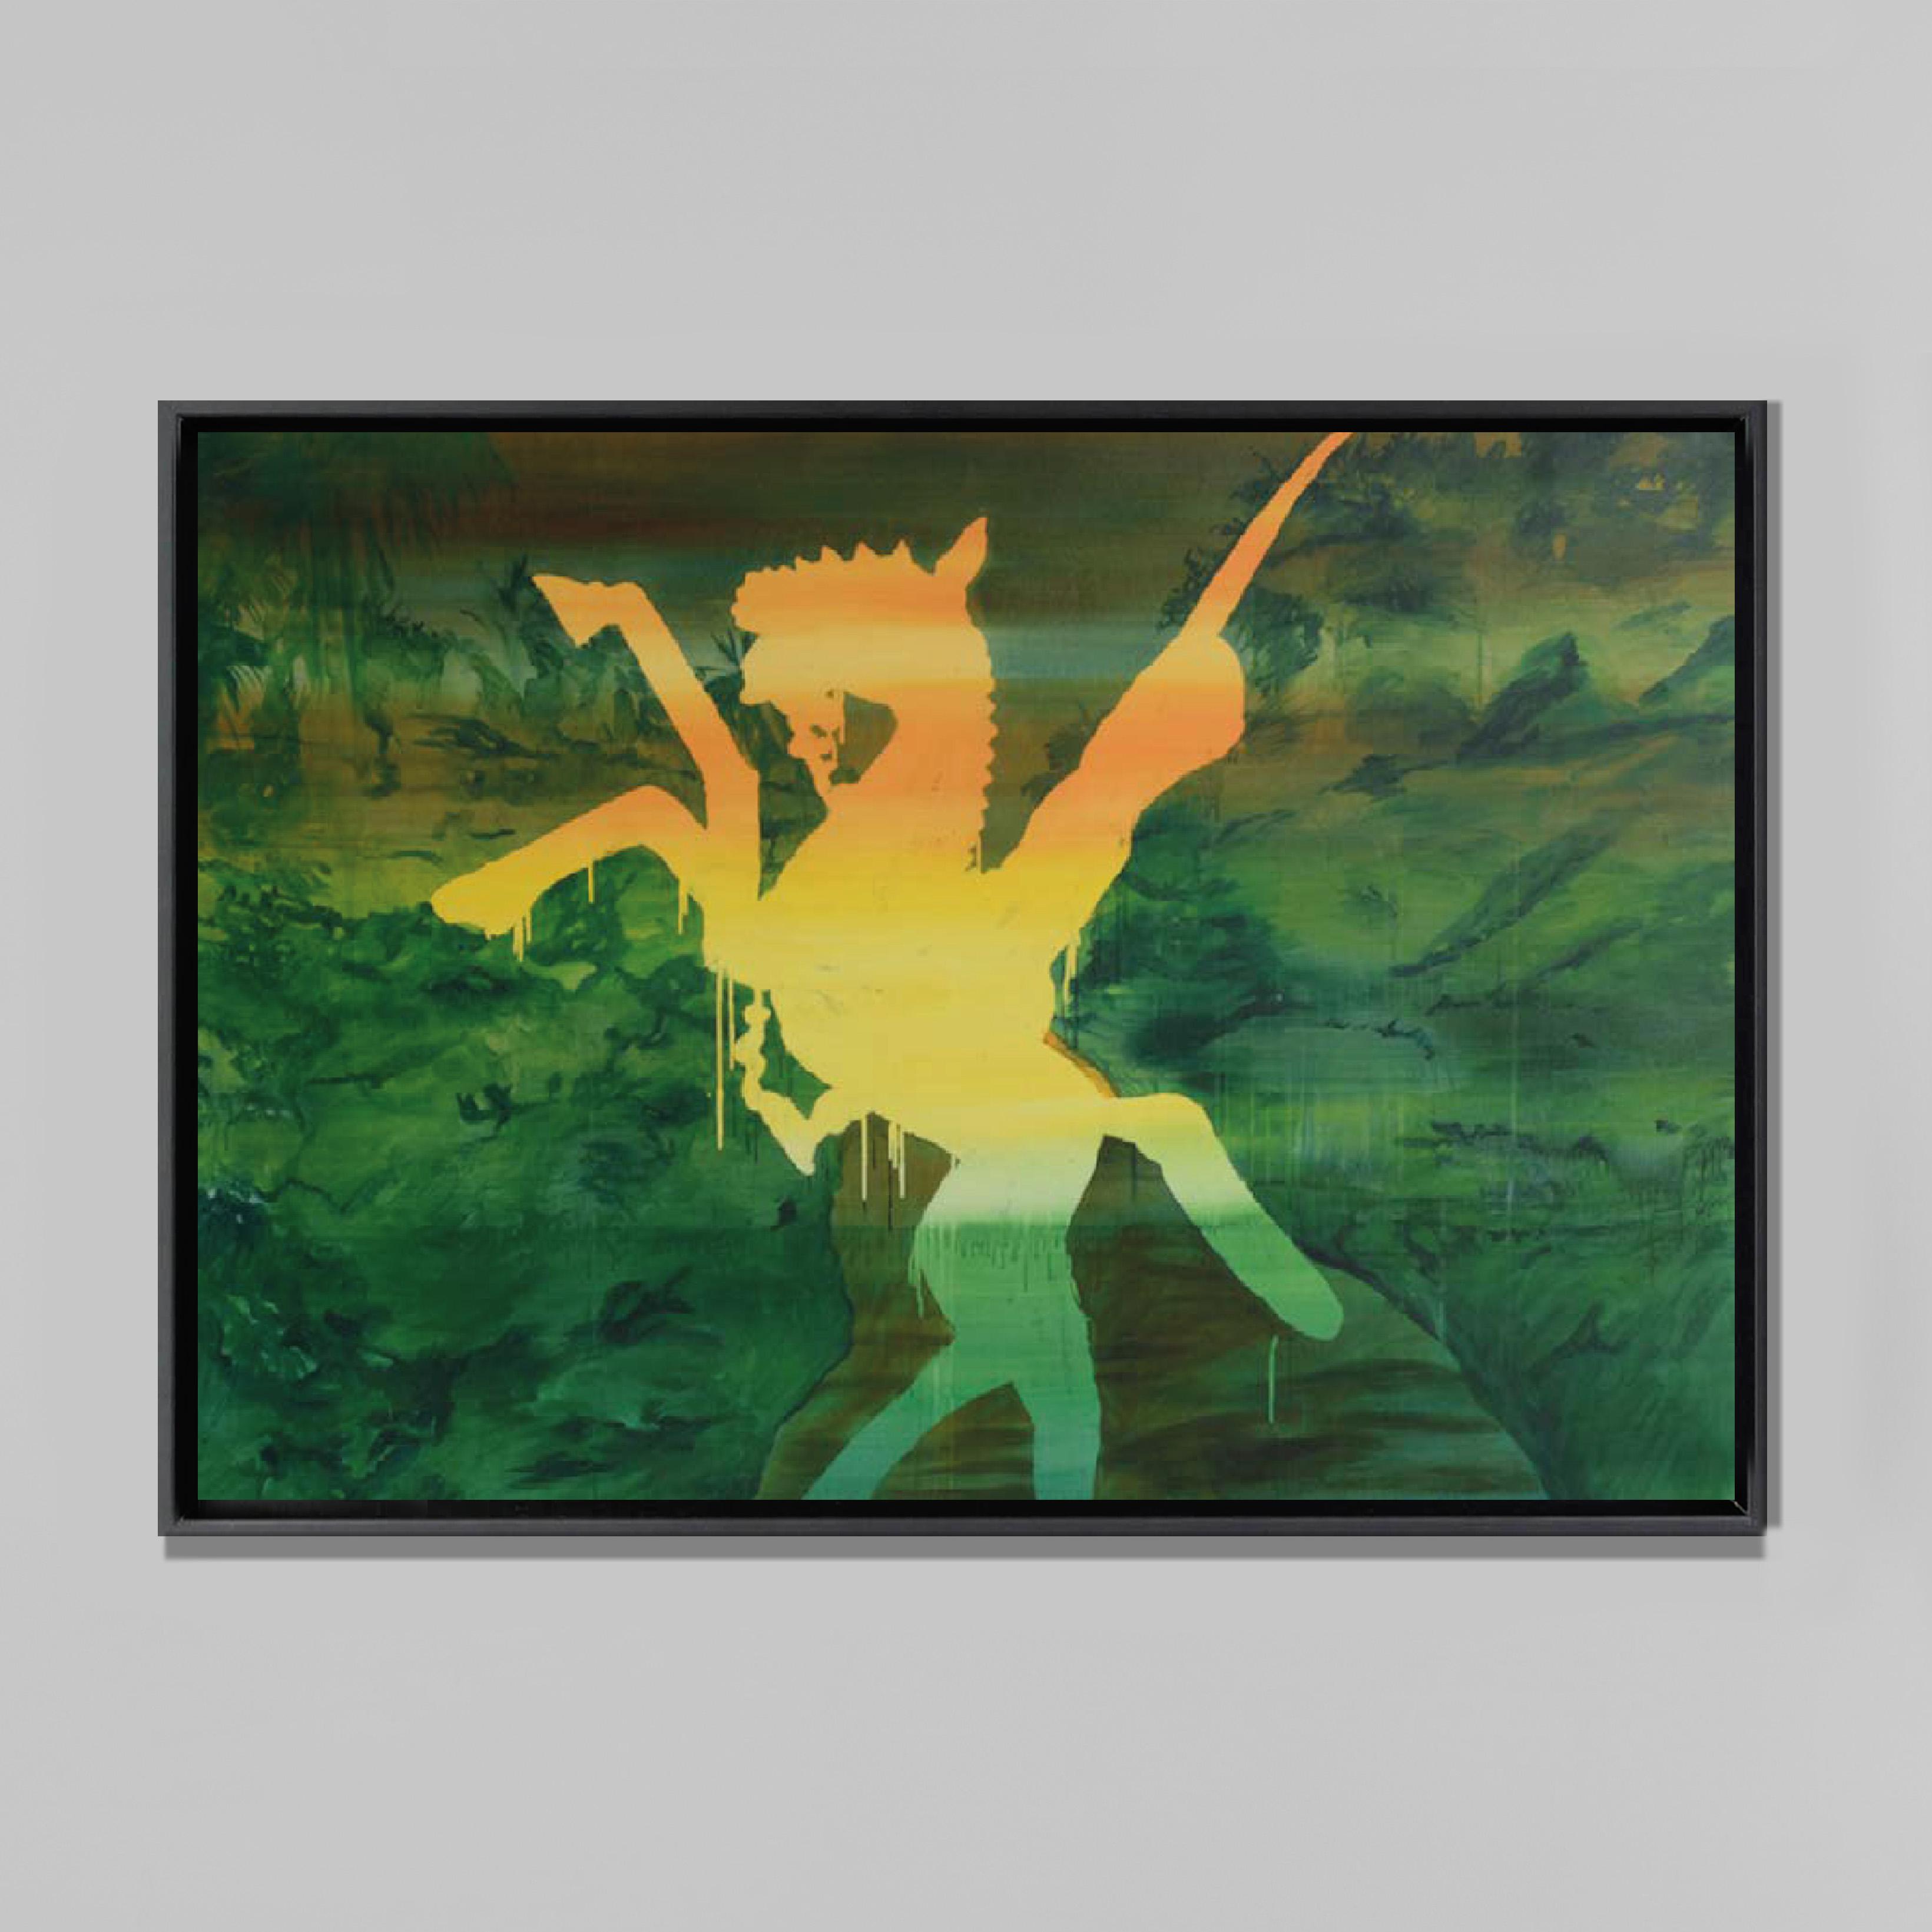 Cavalier, 2017
Encre et acrylique sur toile
120 x 180 cm